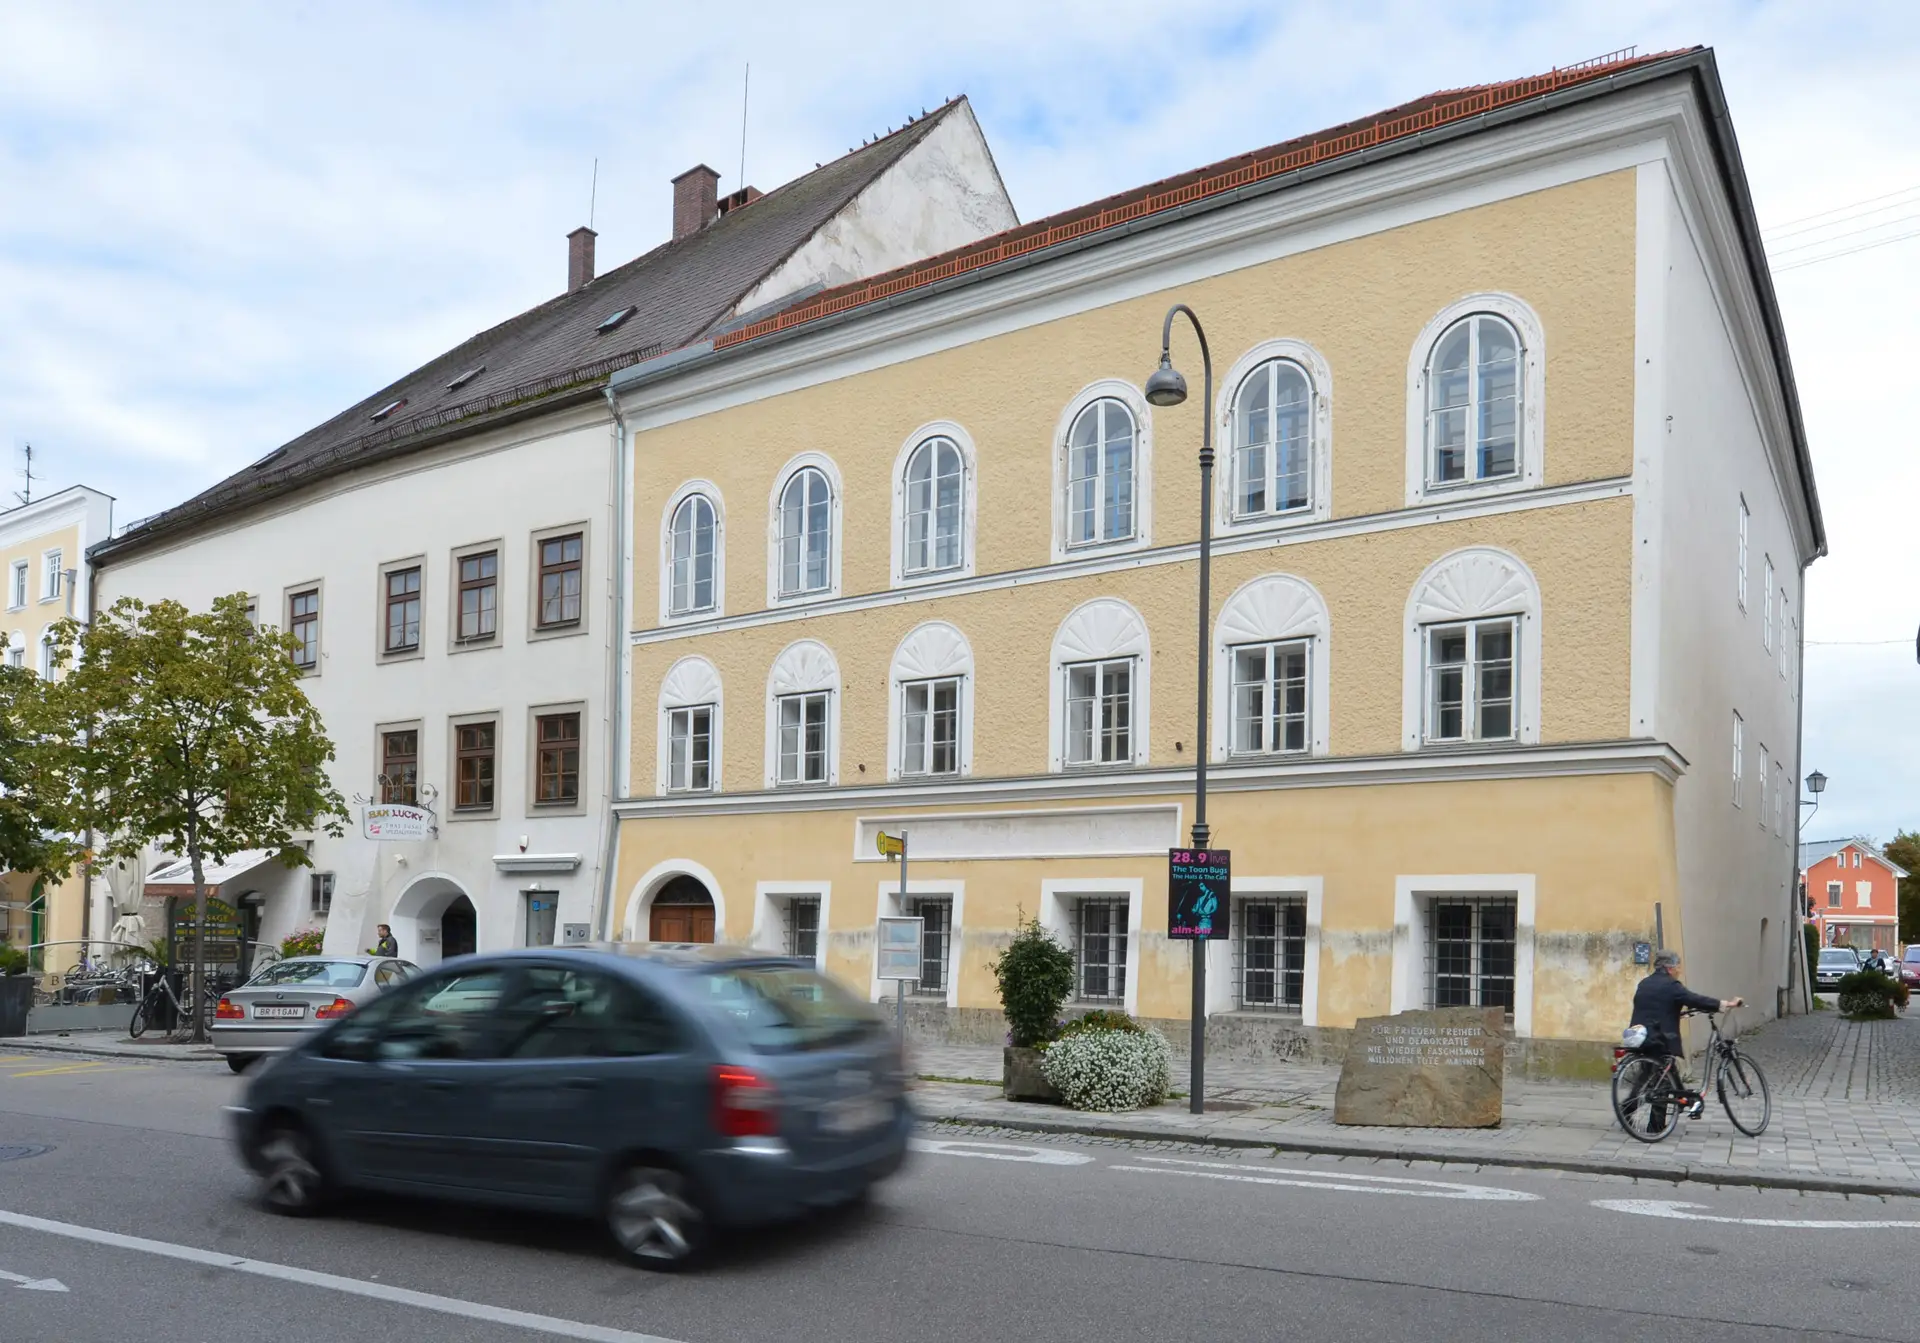 Casa onde nasceu Adolf Hitler, numa localidade da Áustria.